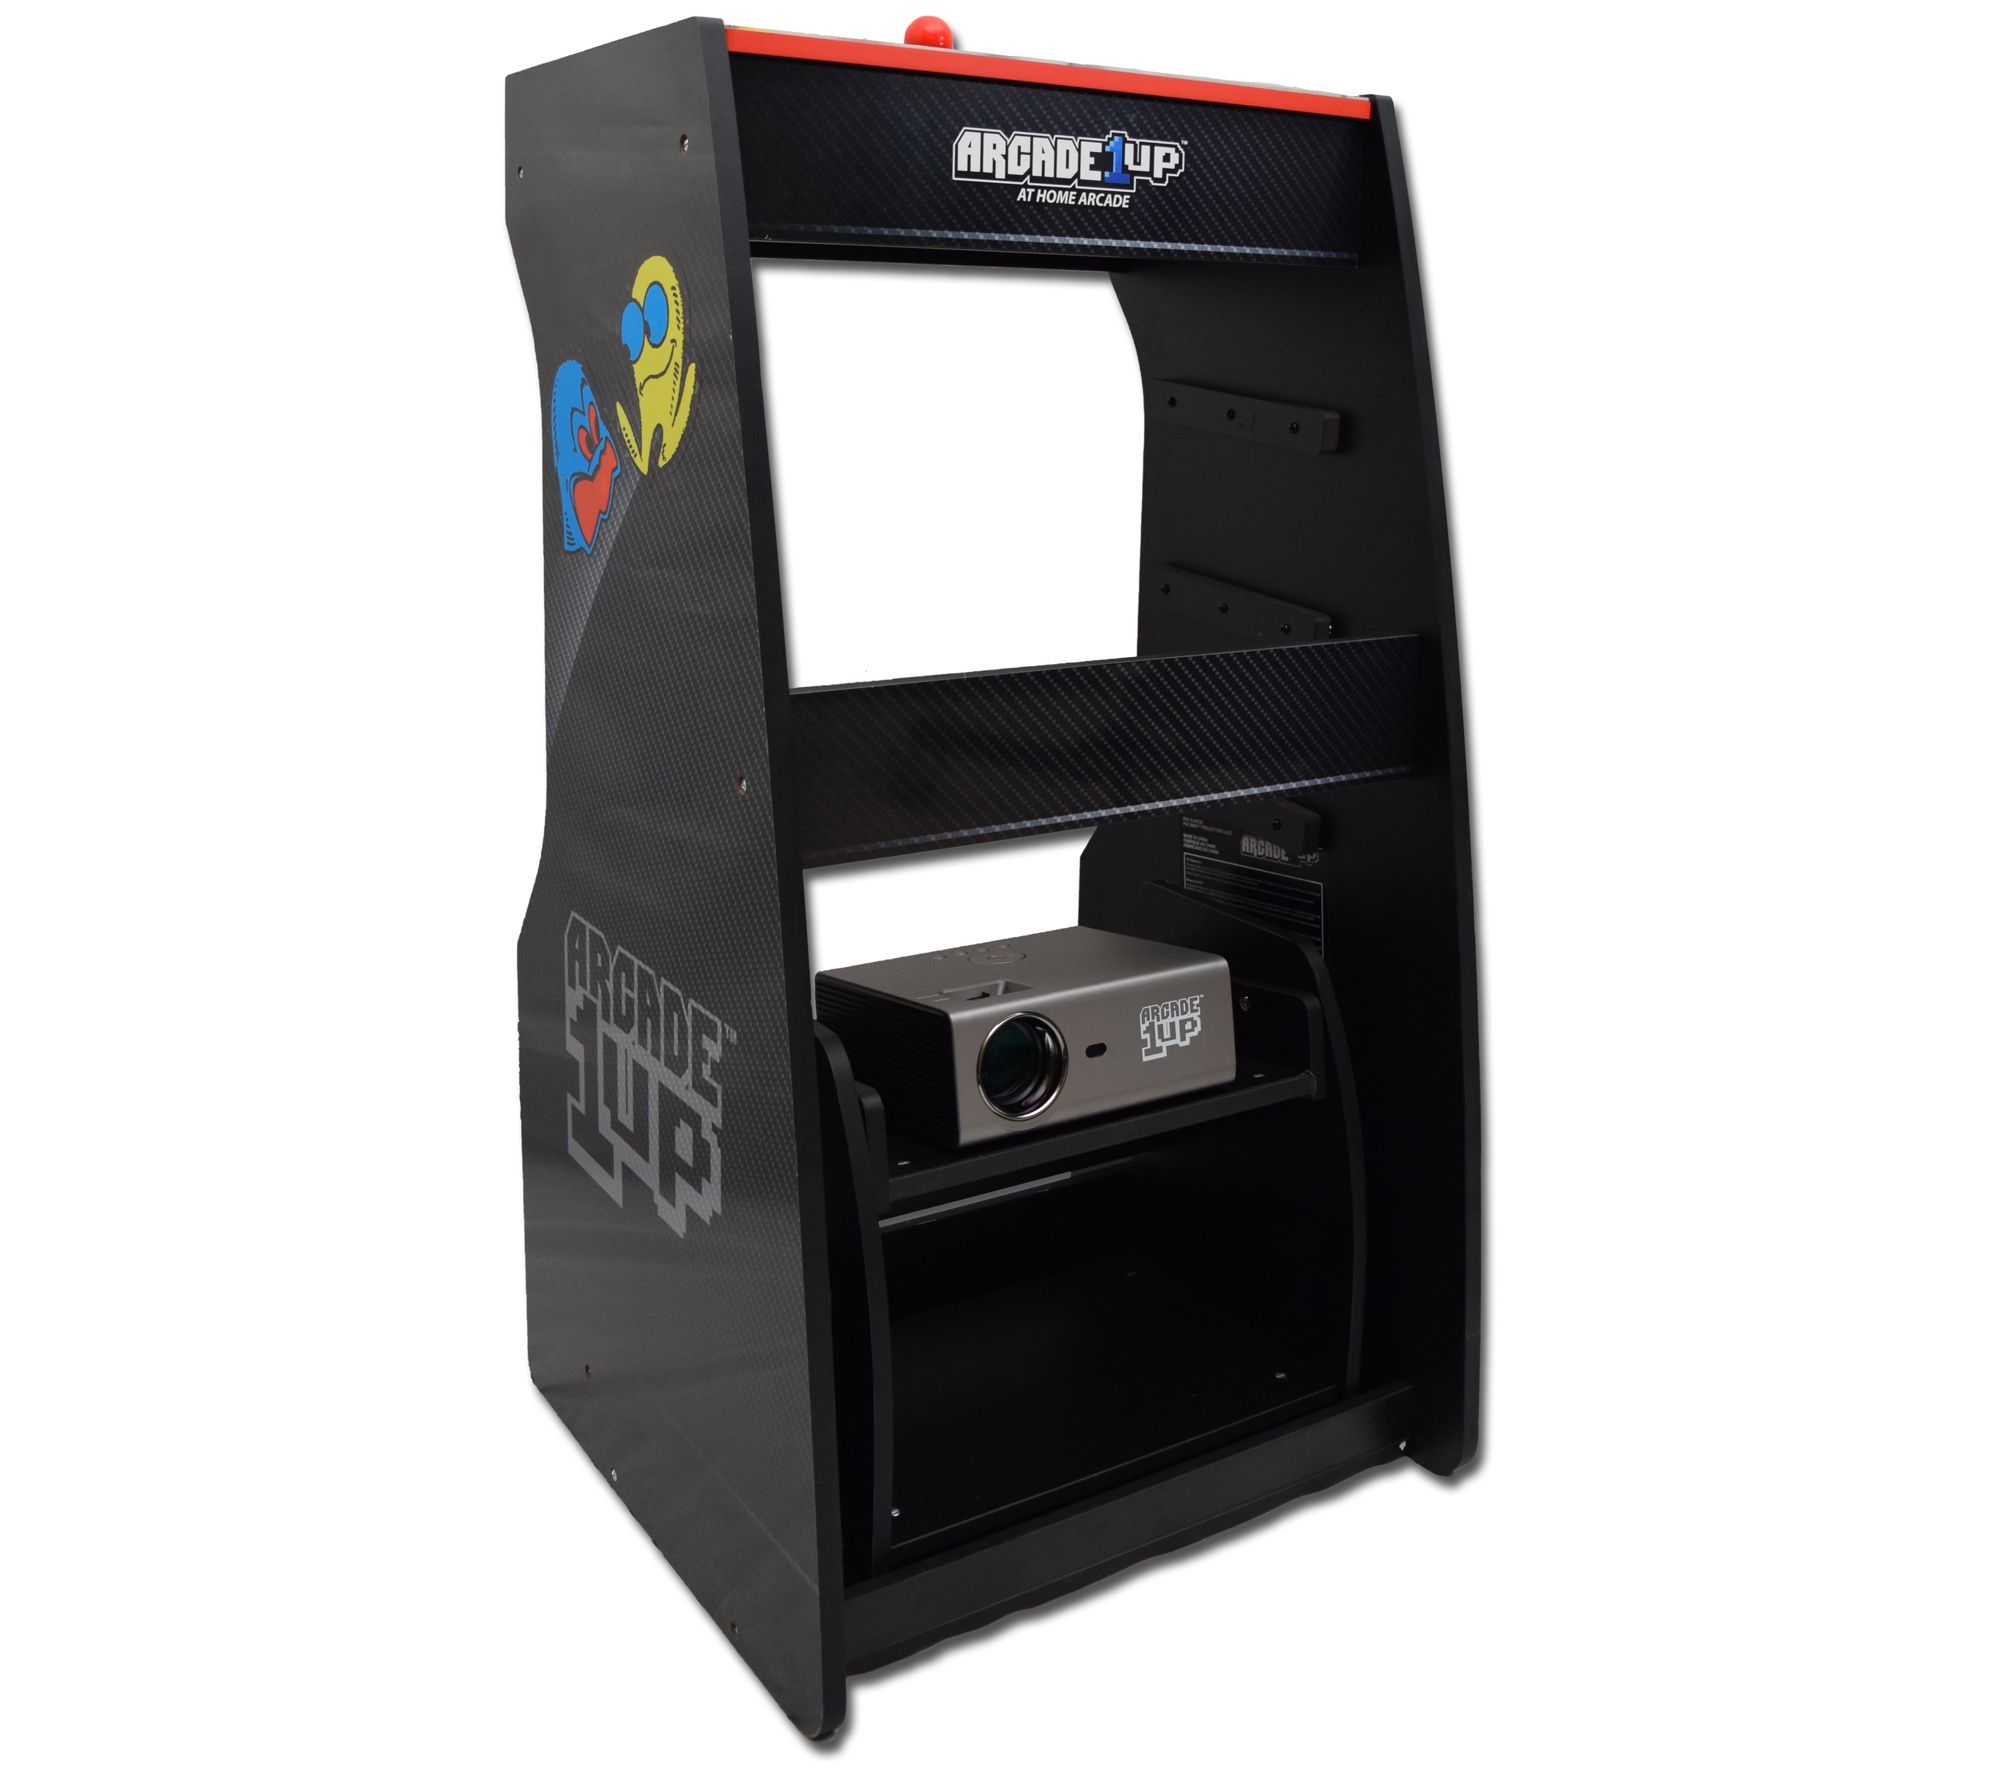 Arcade1Up Projectorcade 12 Game Home Arcade Projector - QVC.com $252